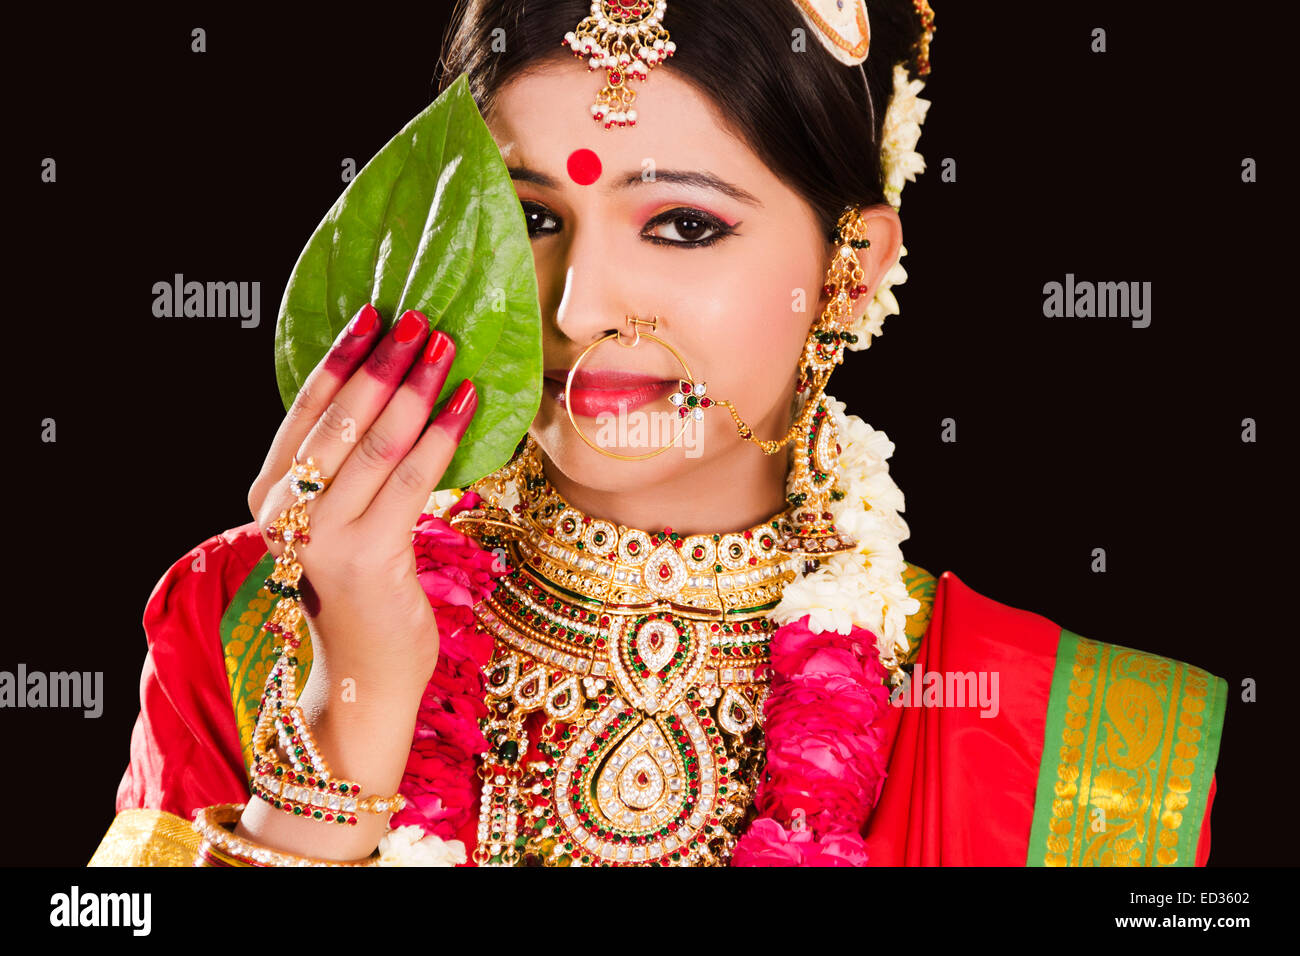 Indian woman sari hiding face hi-res stock photography and images - Alamy